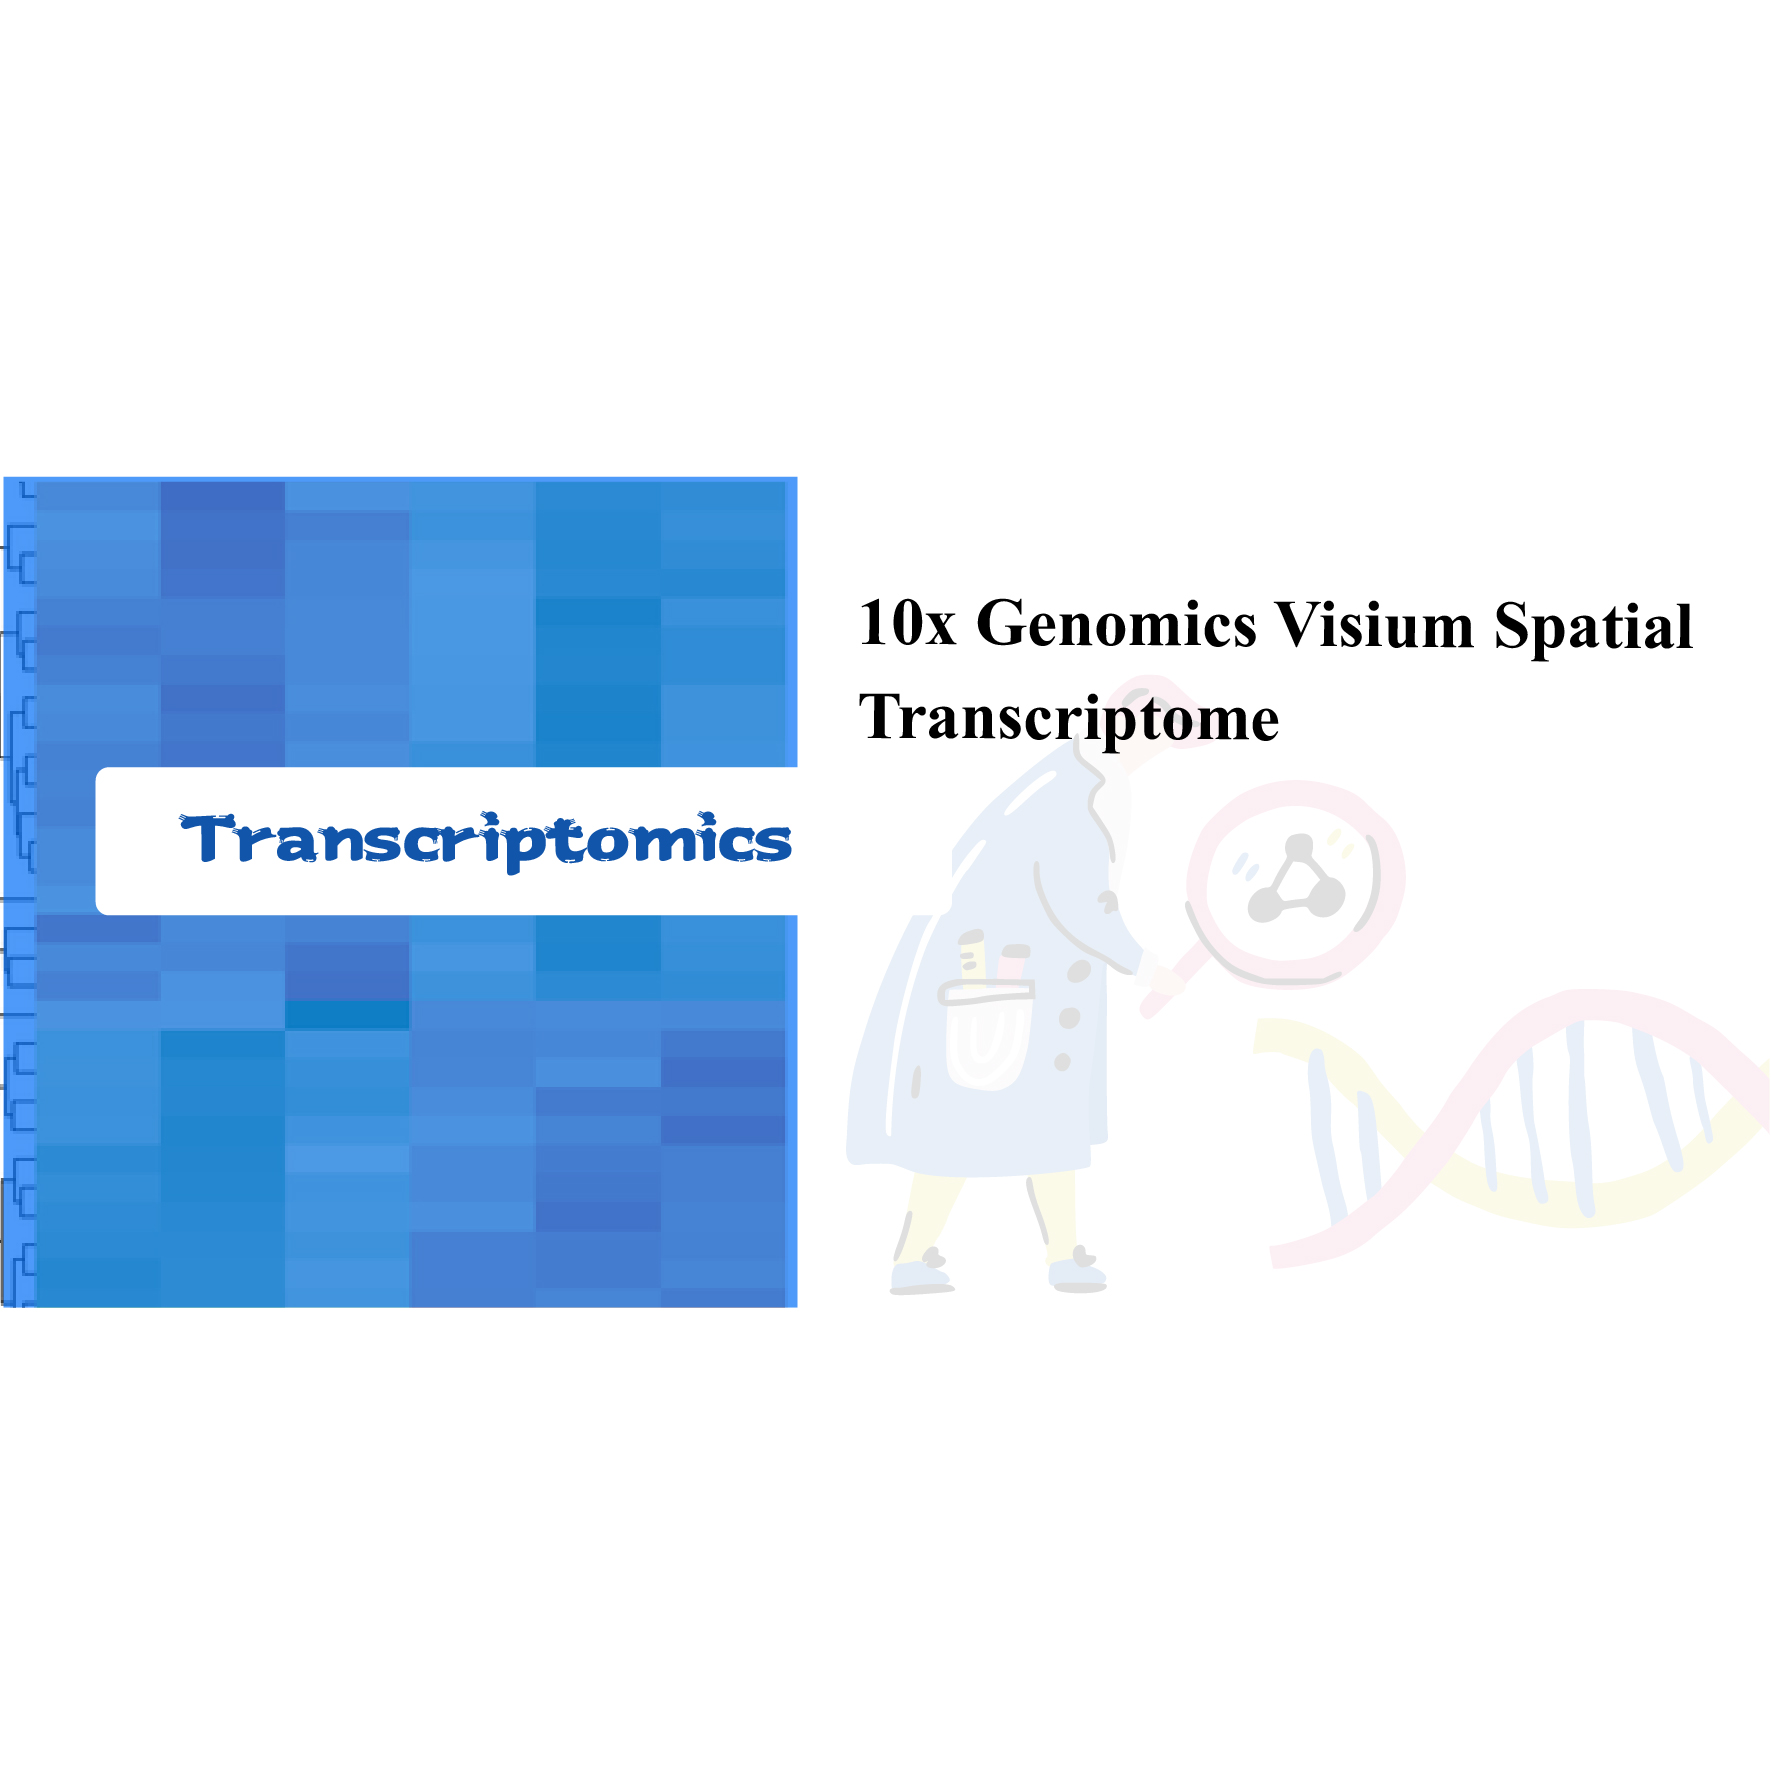 10x Genomics Visium Spatial Transscriptome